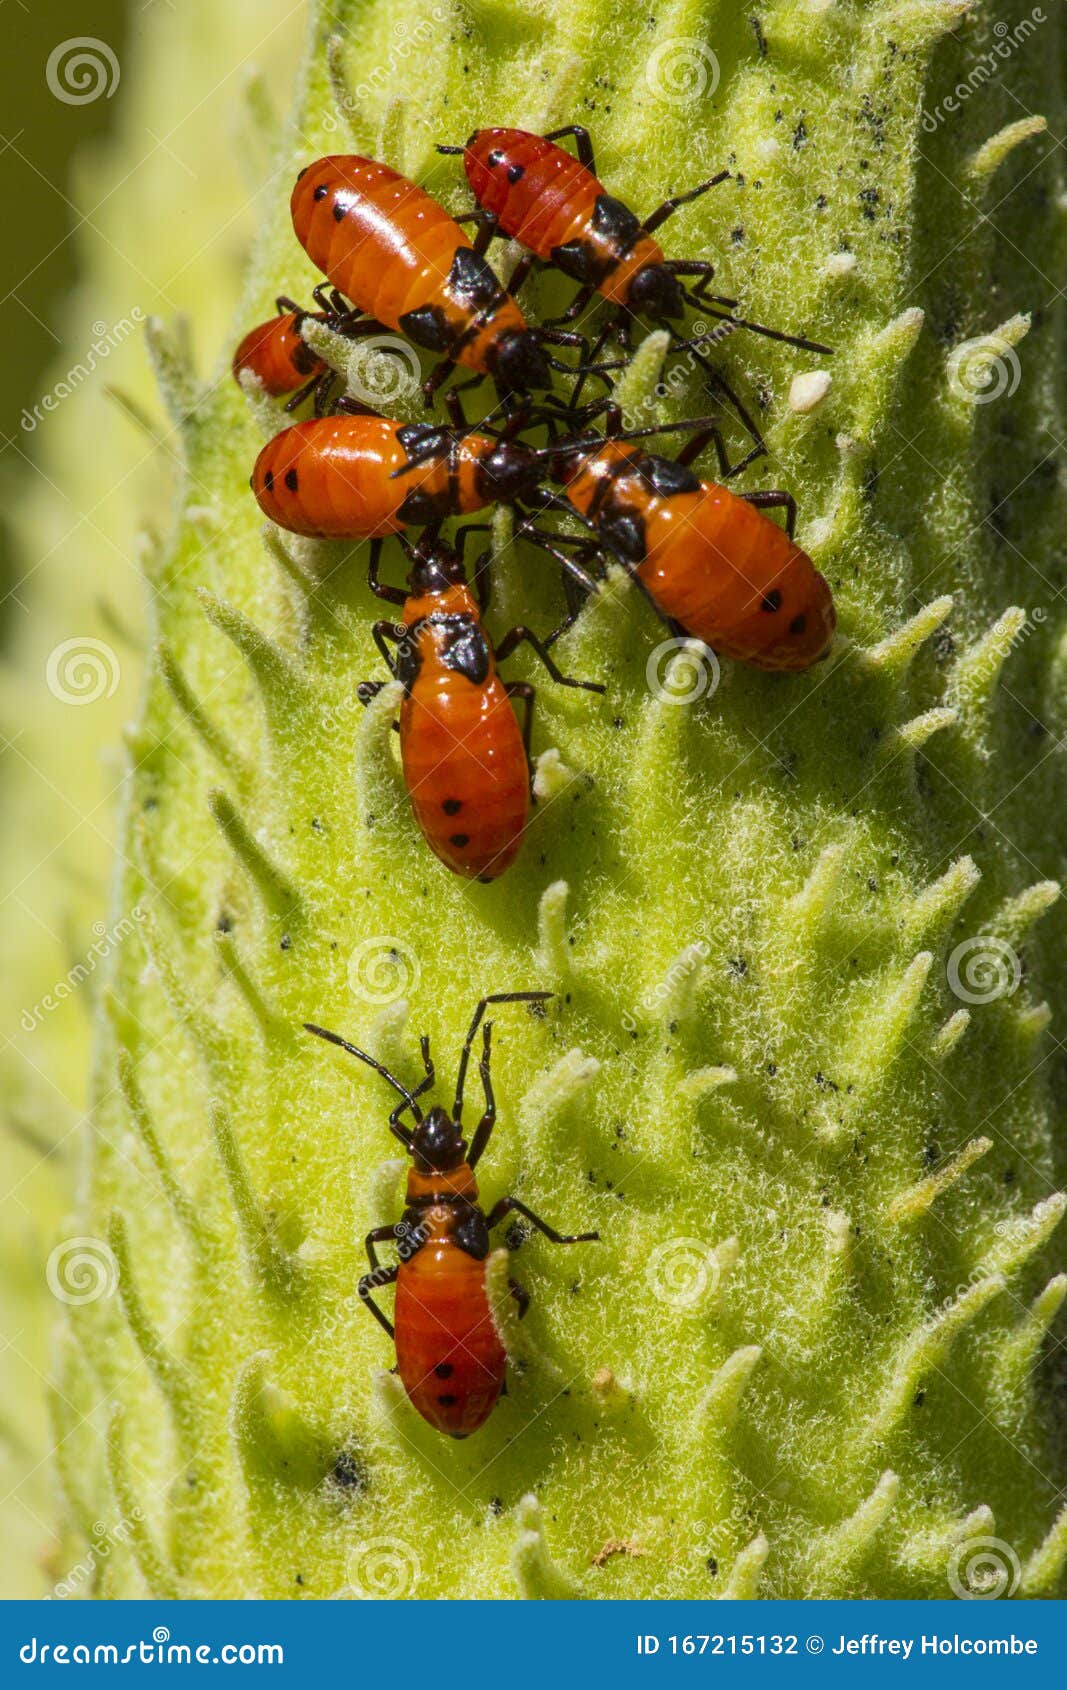 Ladybird Bug in a Pod